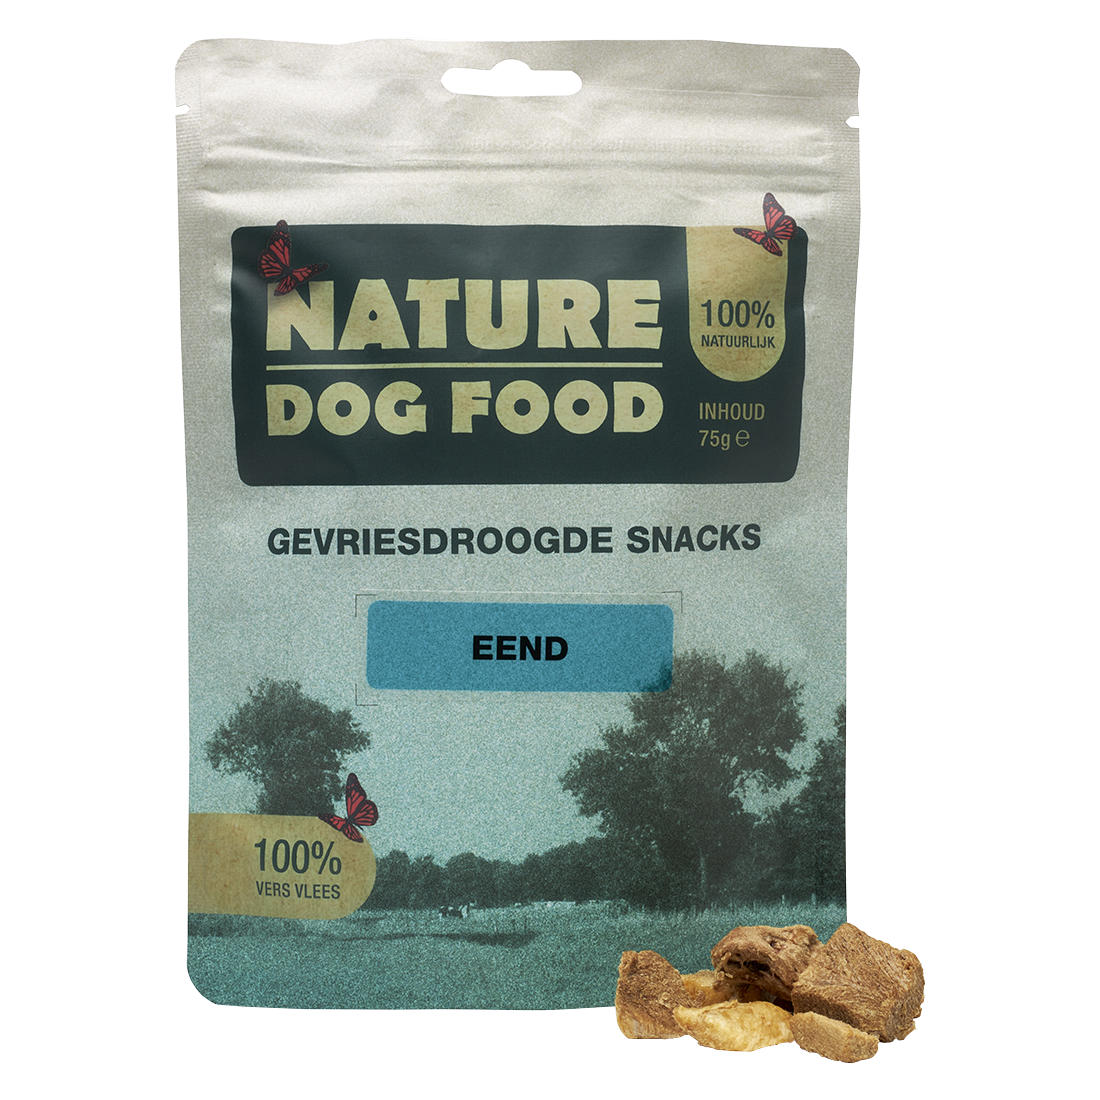 Gevriesdroogde snacks voor honden van Eend